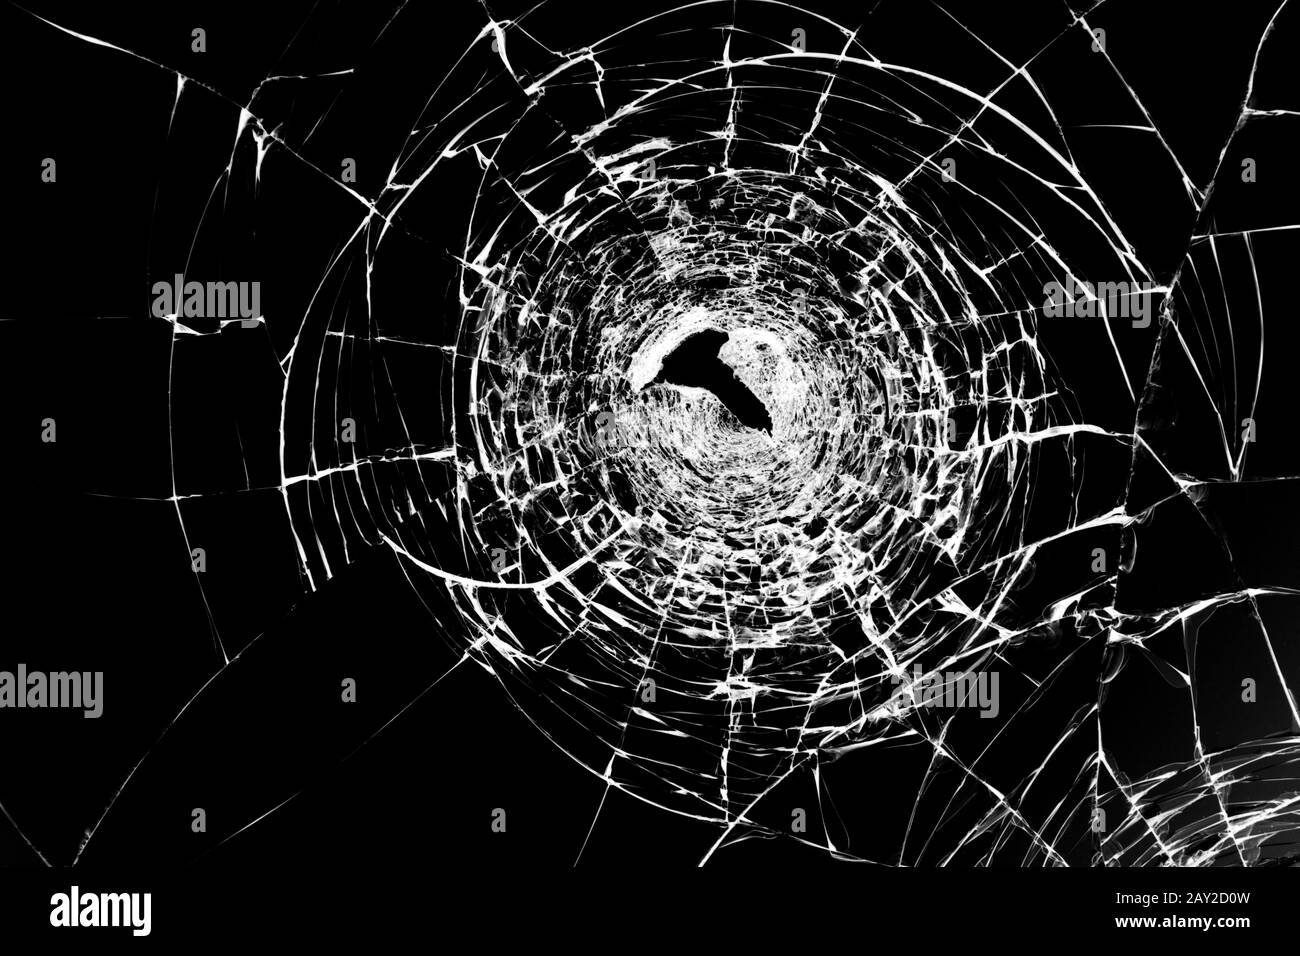 Texture de verre brisé fissuré avec un trou, fissuré par impact. Concept tourné dans la fenêtre sur un arrière-plan noir pour le design. Banque D'Images